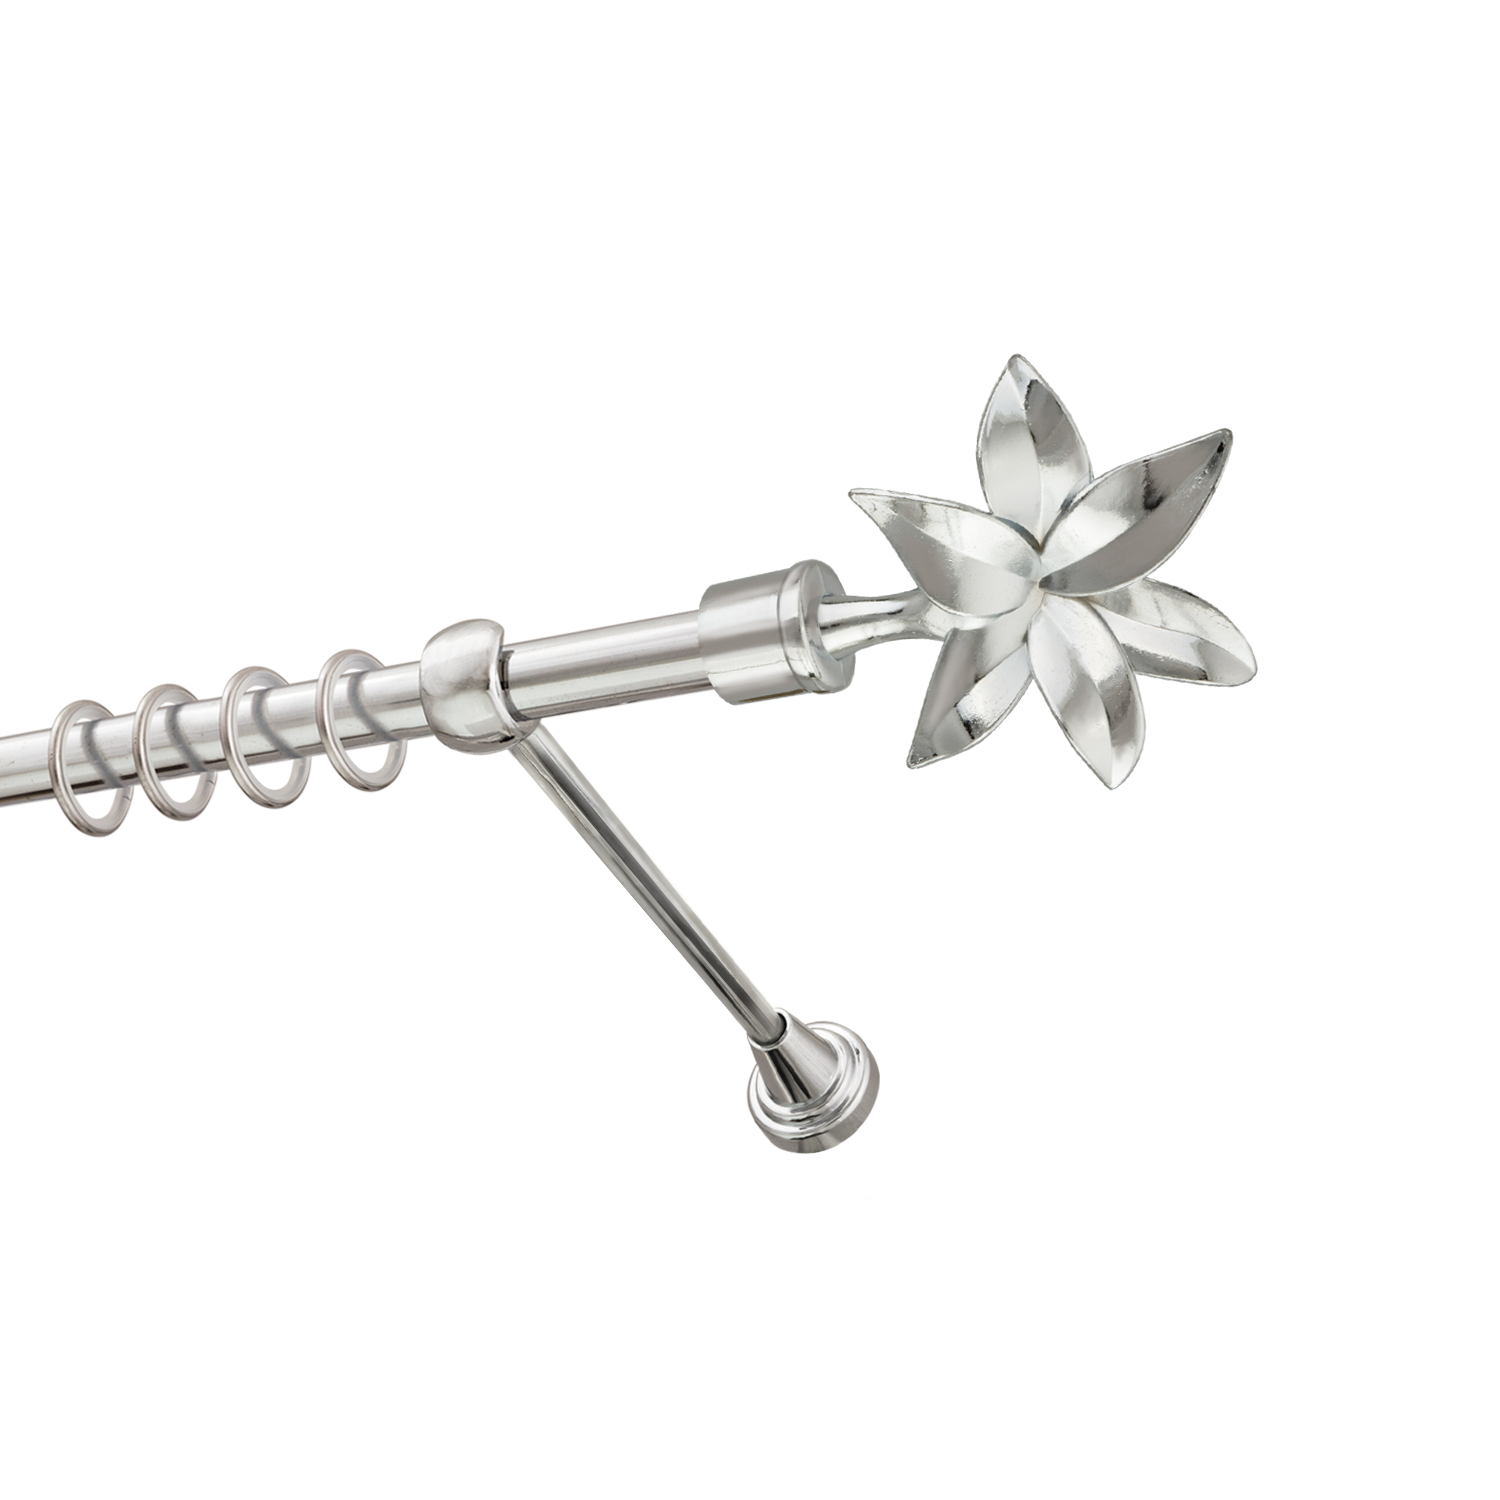 Металлический карниз для штор Магнолия, однорядный 16 мм, серебро, гладкая штанга, длина 240 см - фото Wikidecor.ru